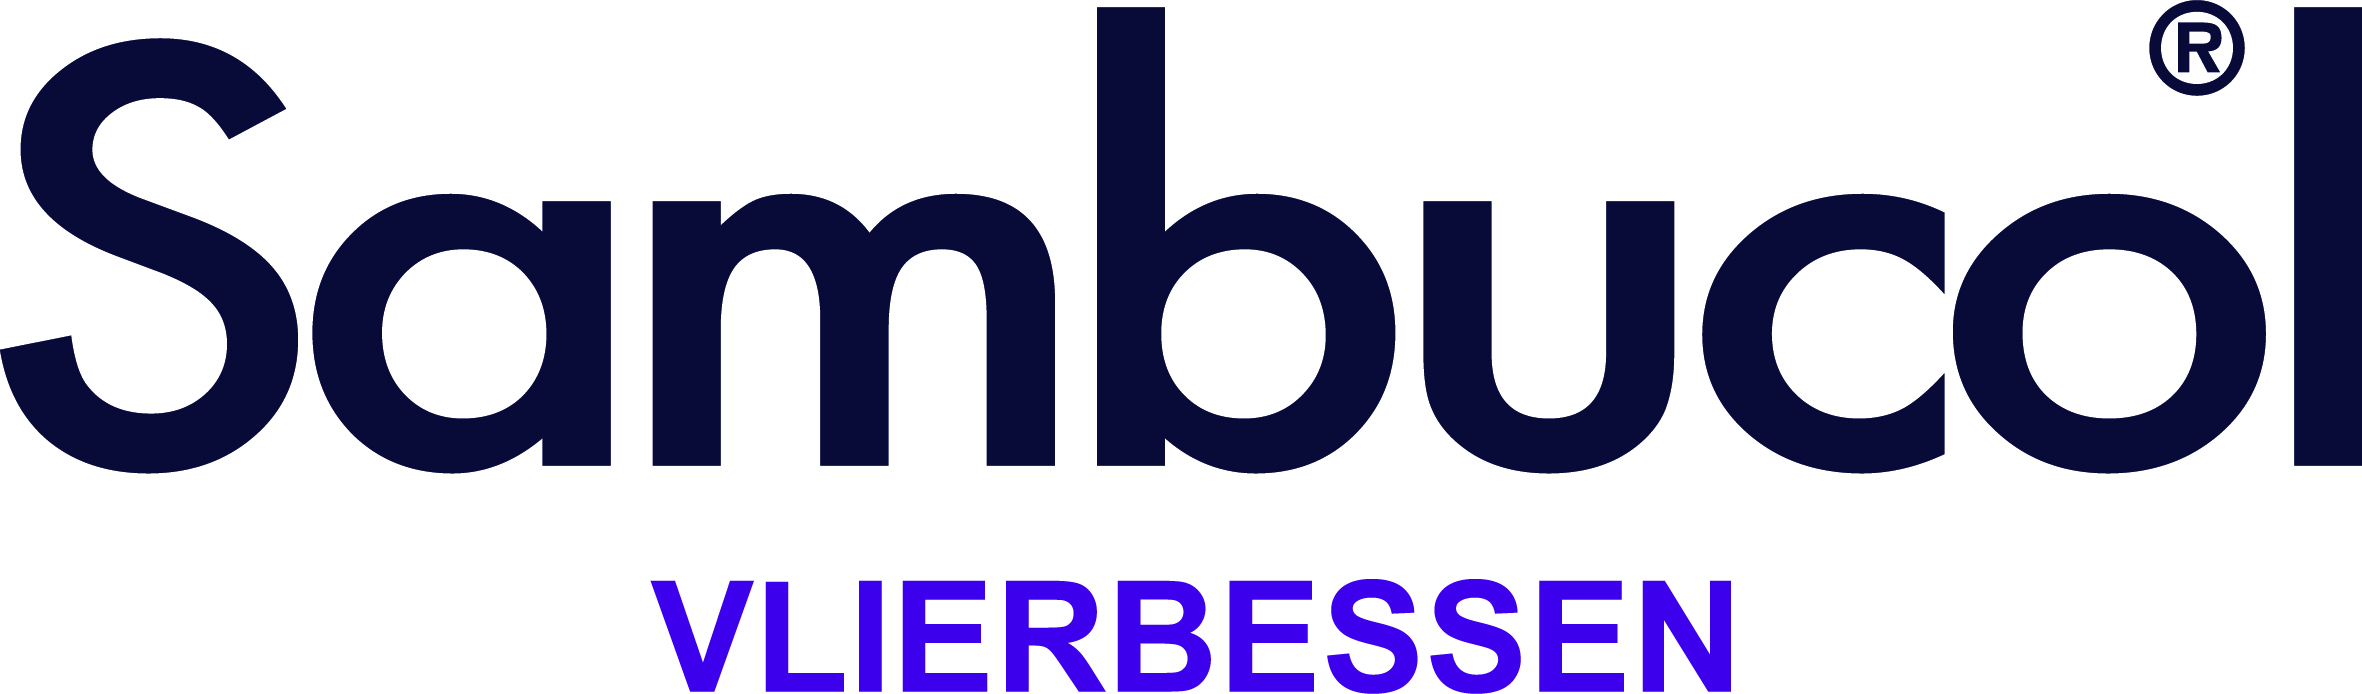 SMB NL Logos